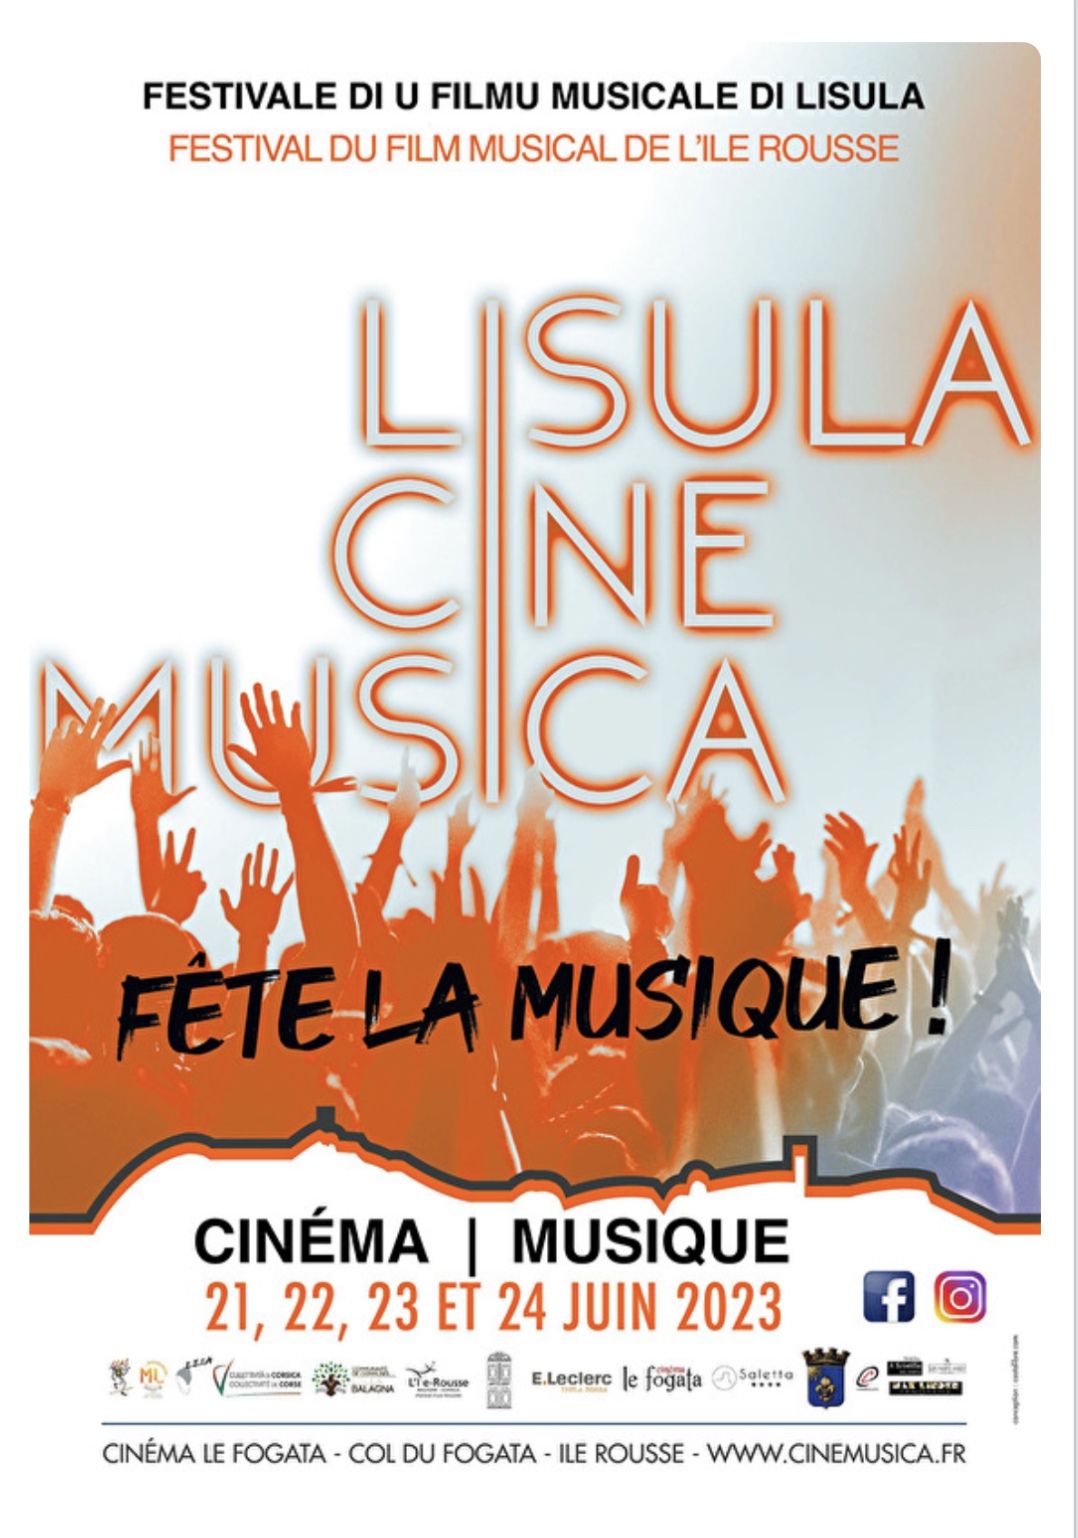 LiuslaCineMusica celebra la musica |  Notizie |  Info Rete Corsica